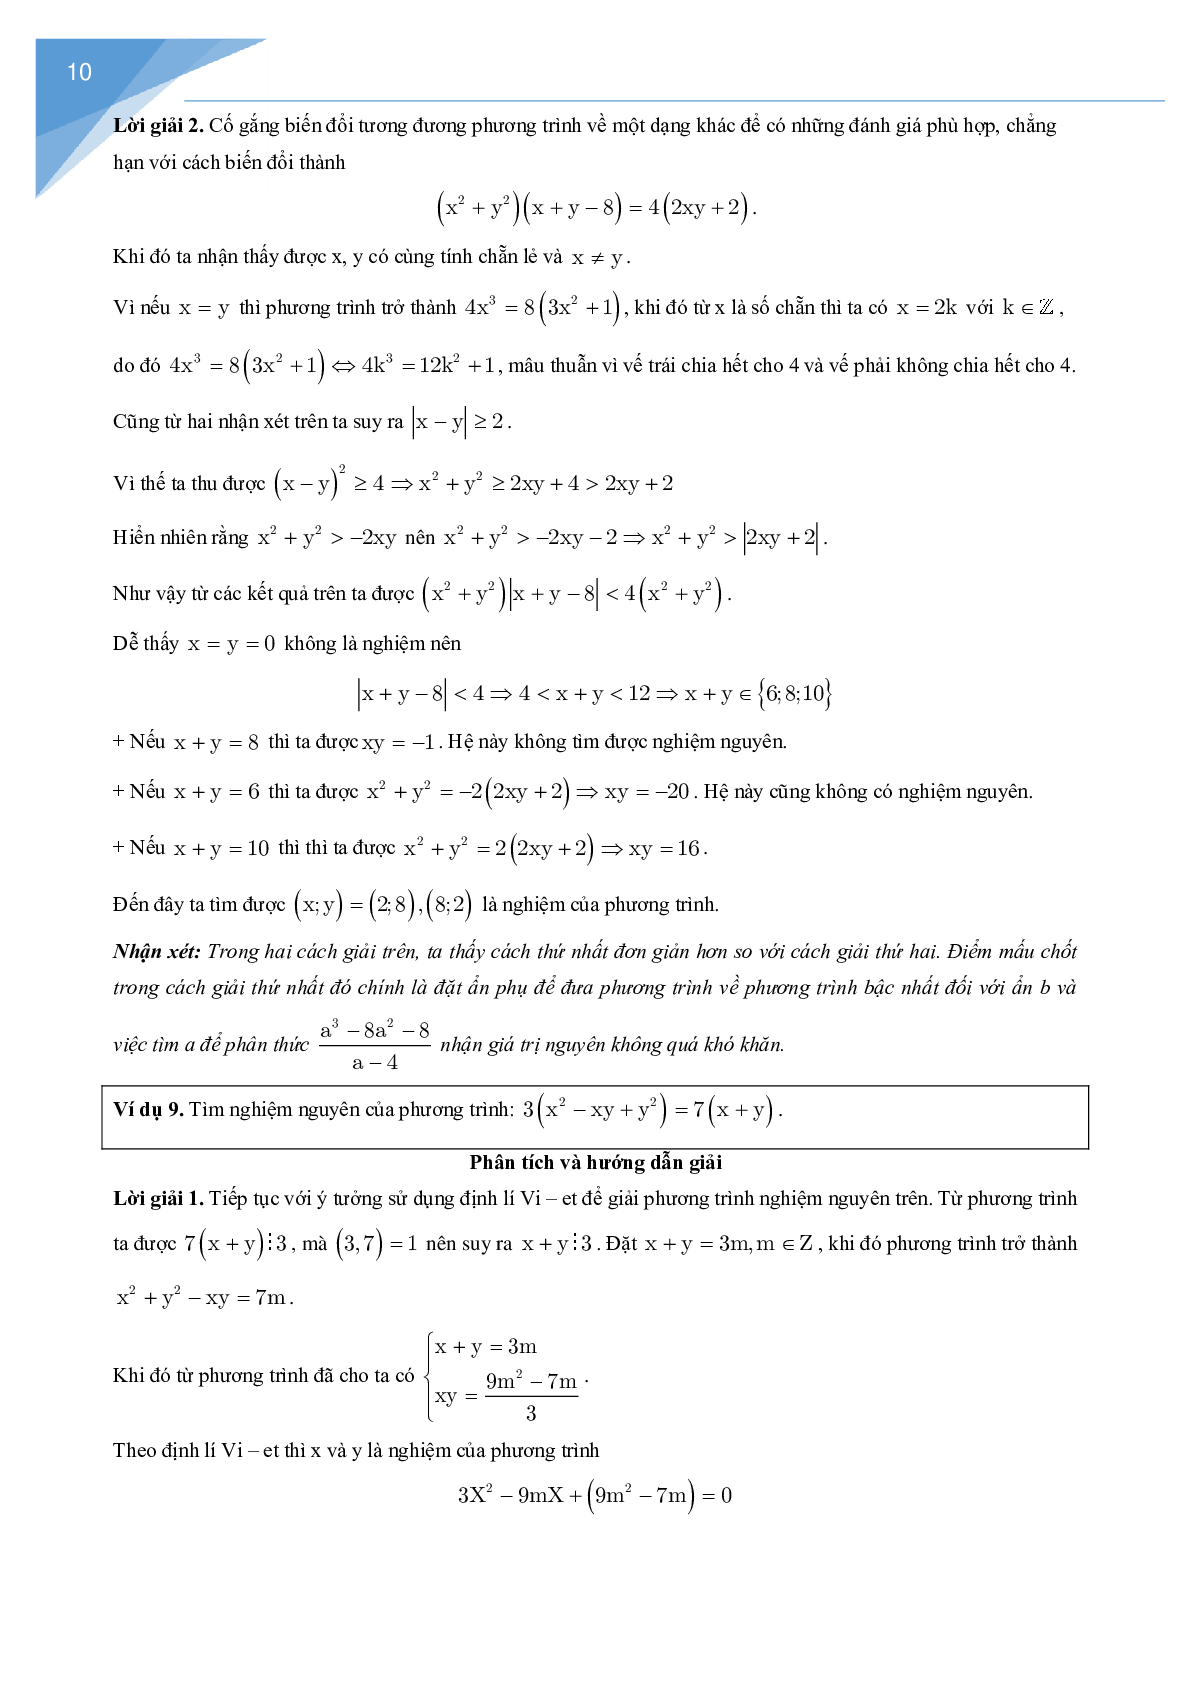 Vận dụng định lý Vi-et giải một số bài toán số học (trang 10)